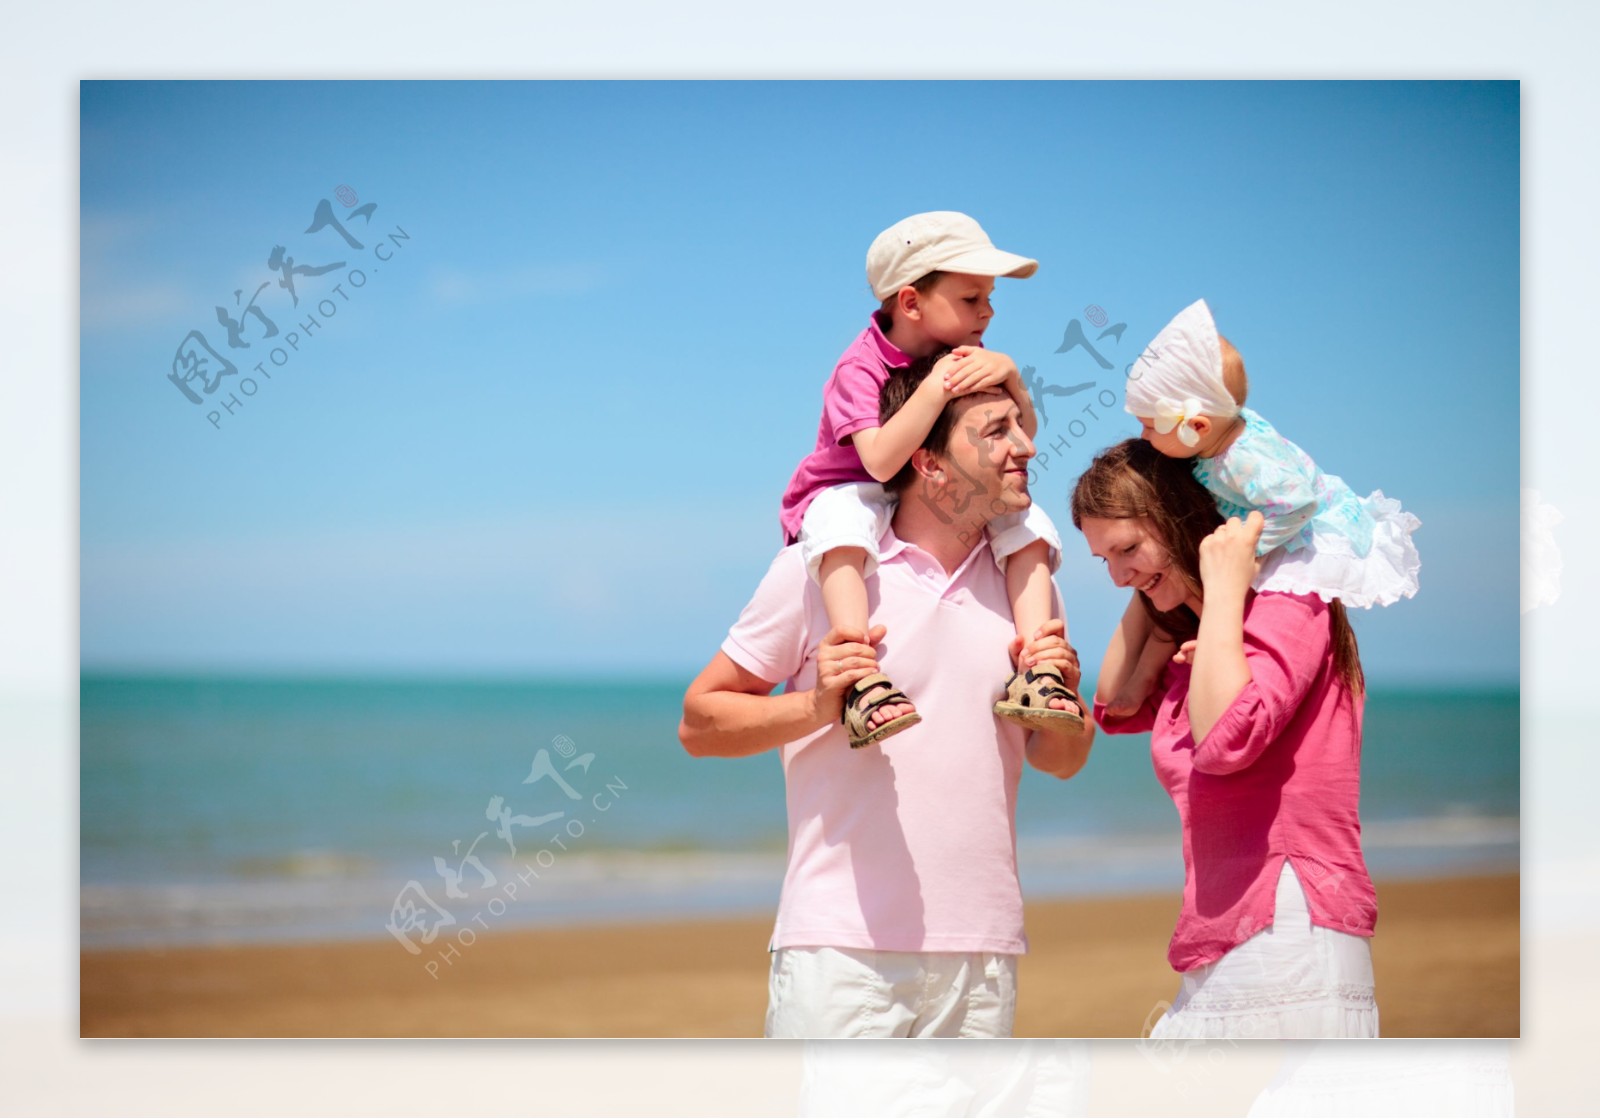 在海边度假的一家人图片